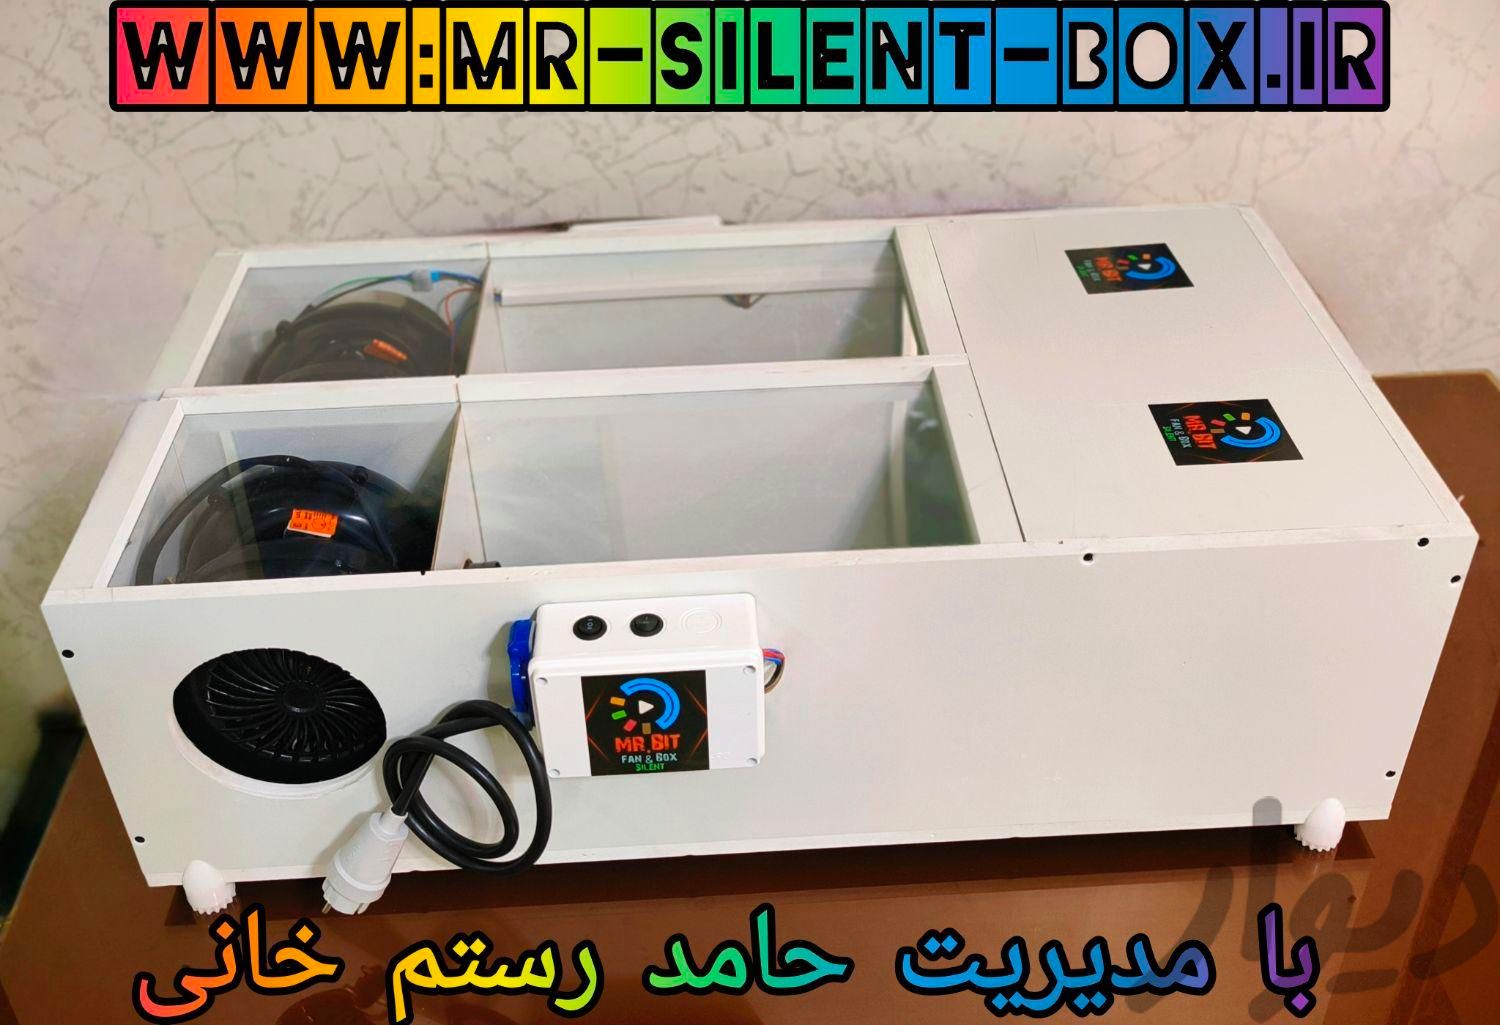 سوپر باکس های دو ظرفیتی ماینر سایلنت|قطعات و لوازم جانبی رایانه|تهران, جمهوری|دیوار